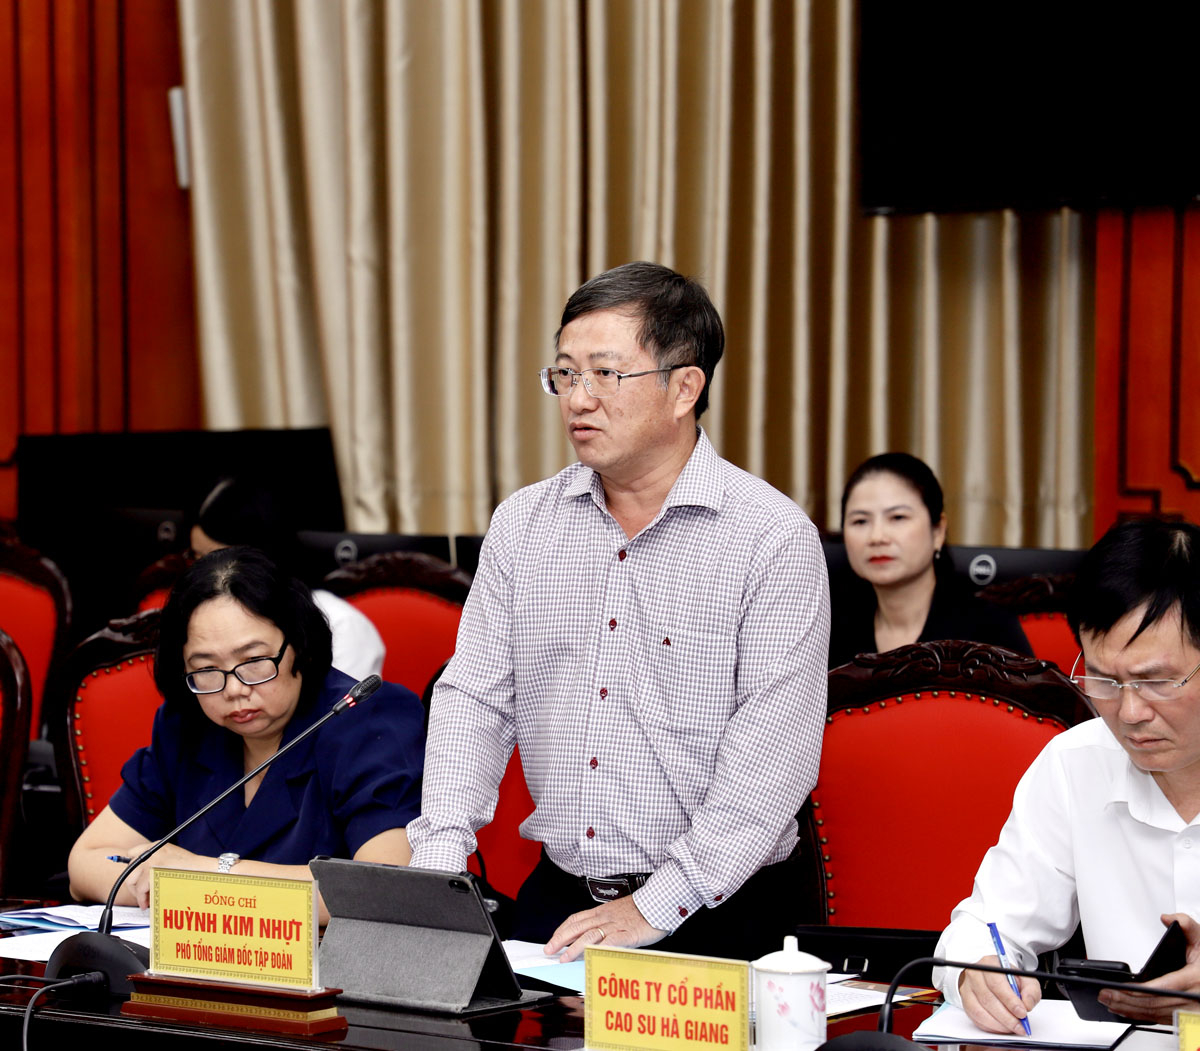 Ông Huỳnh Kim Nhựt, Phó Chủ tịch Tập đoàn Công nghiệp cao su Việt Nam phát biểu tại buổi làm việc